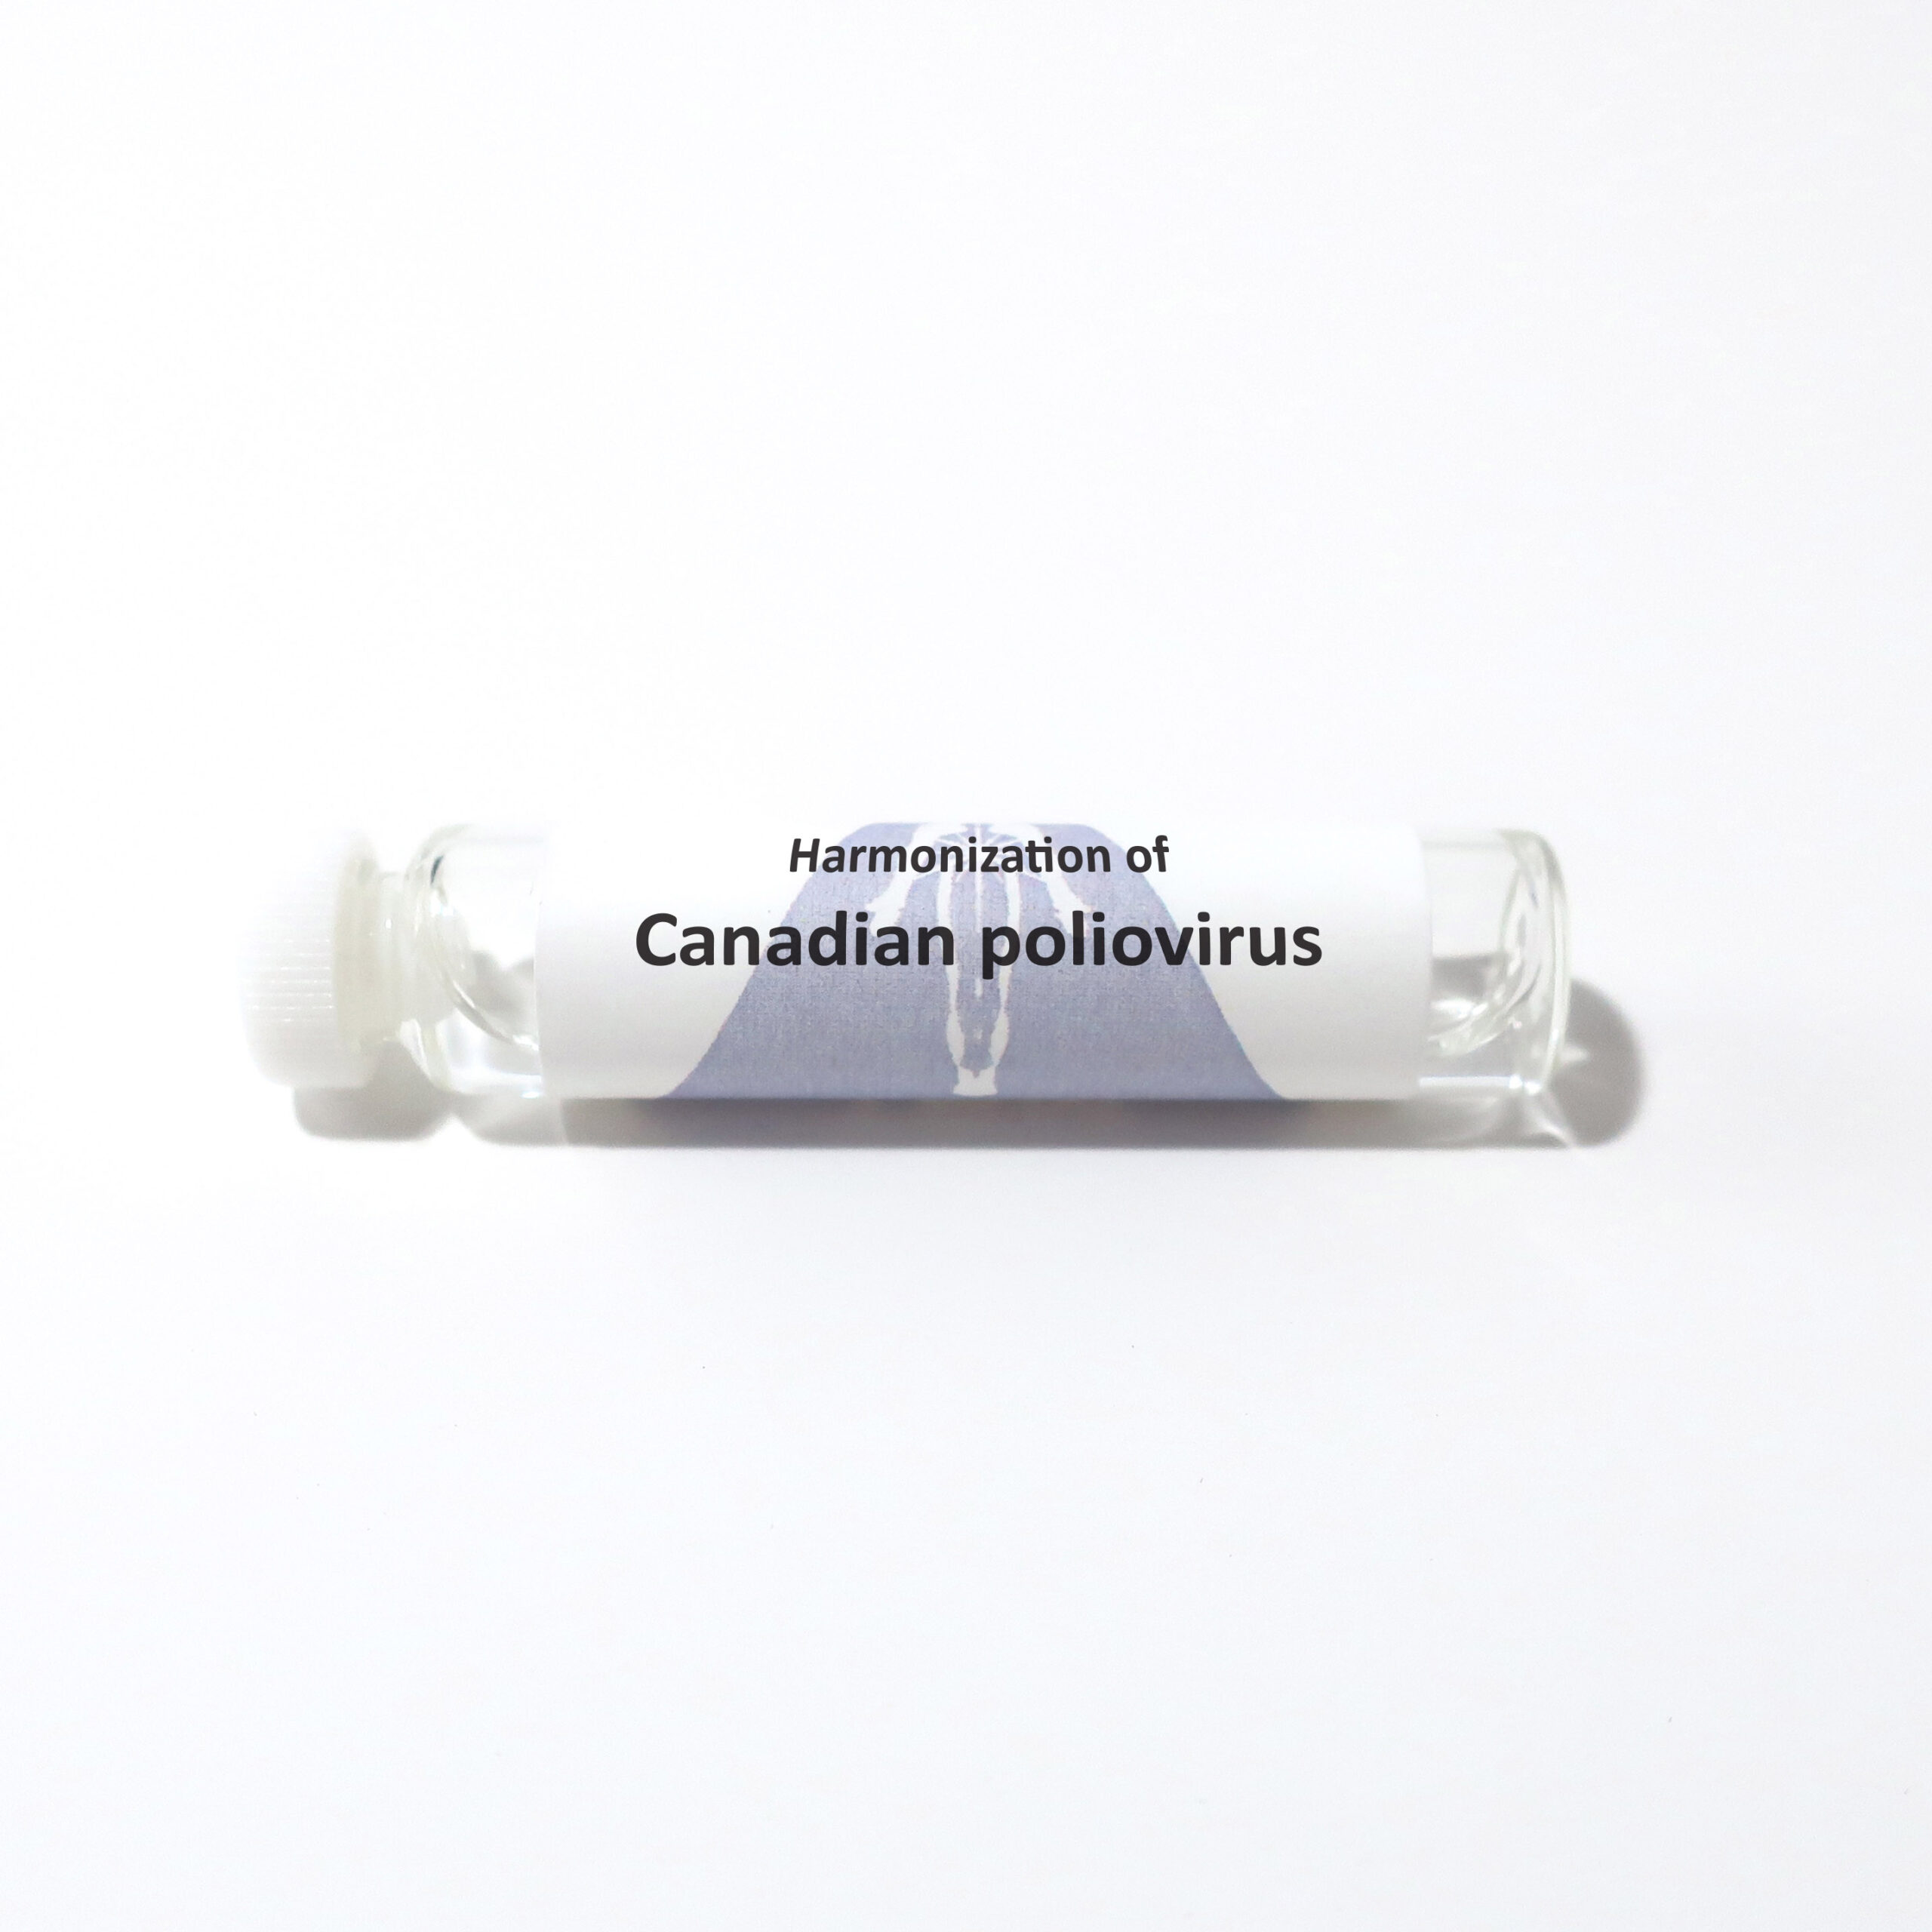 Canadian poliovirus